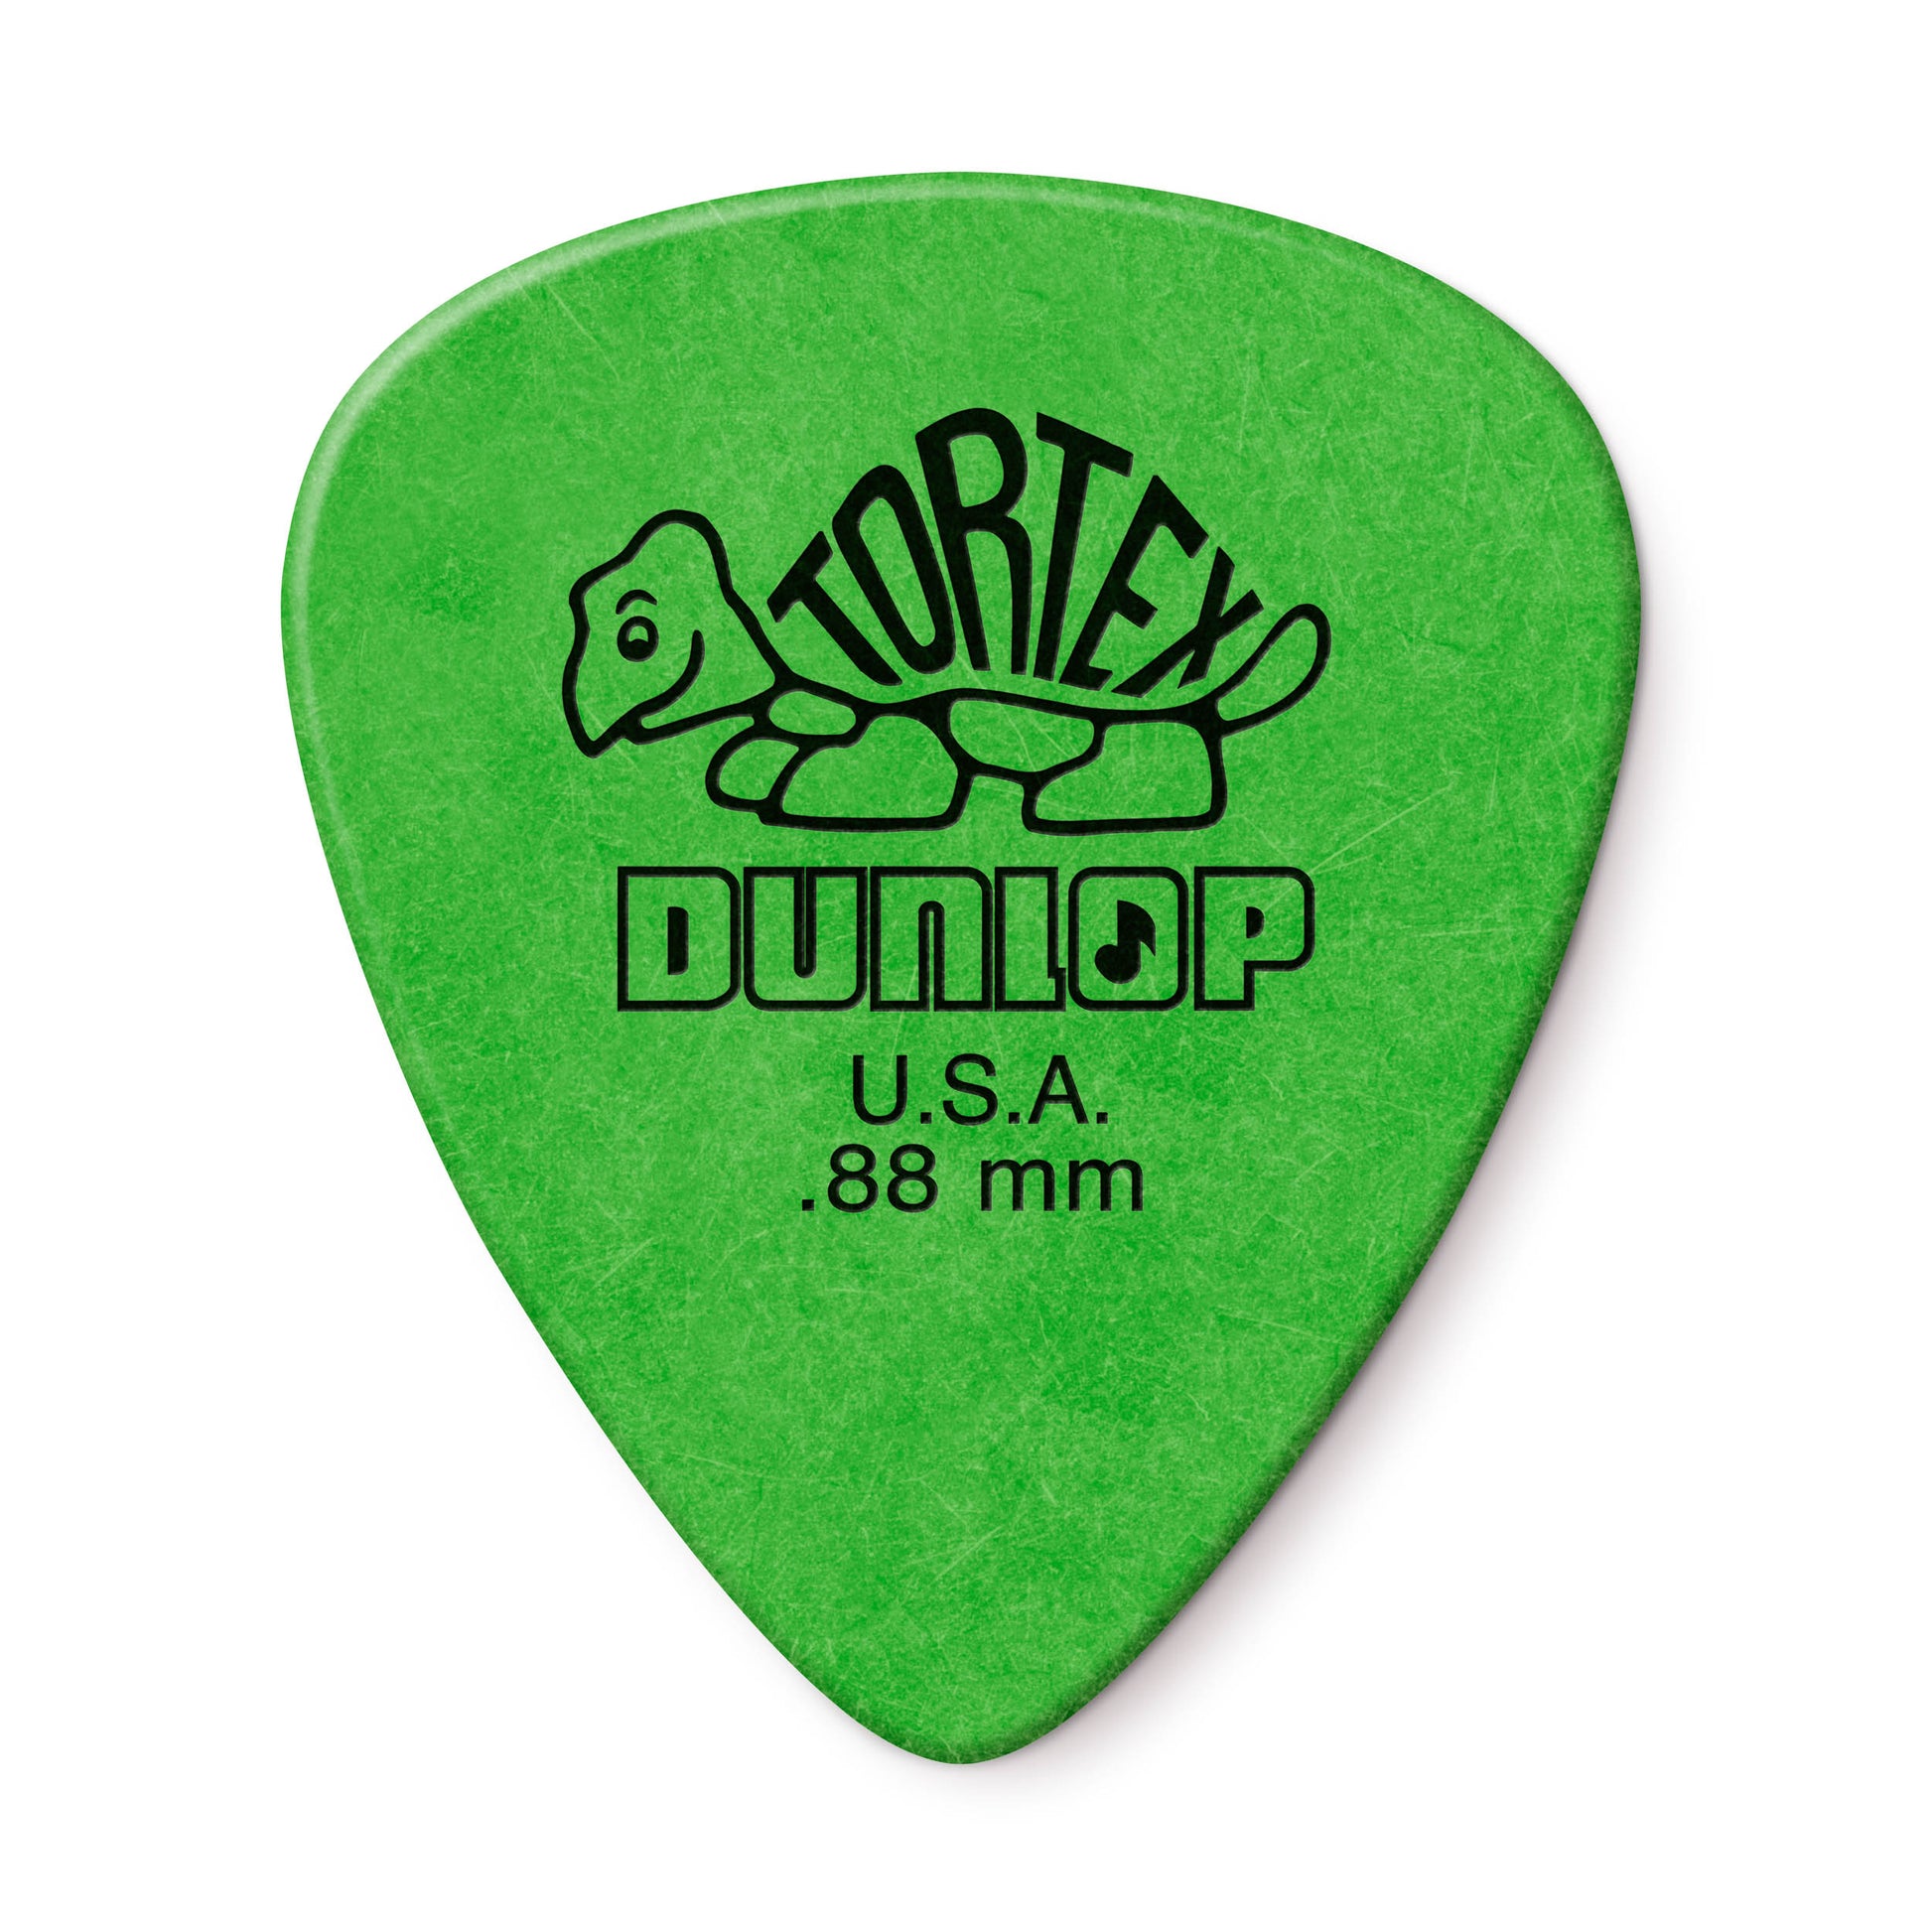 Dunlop Tortex Standard Picks (12-Pack), Green, .88mm